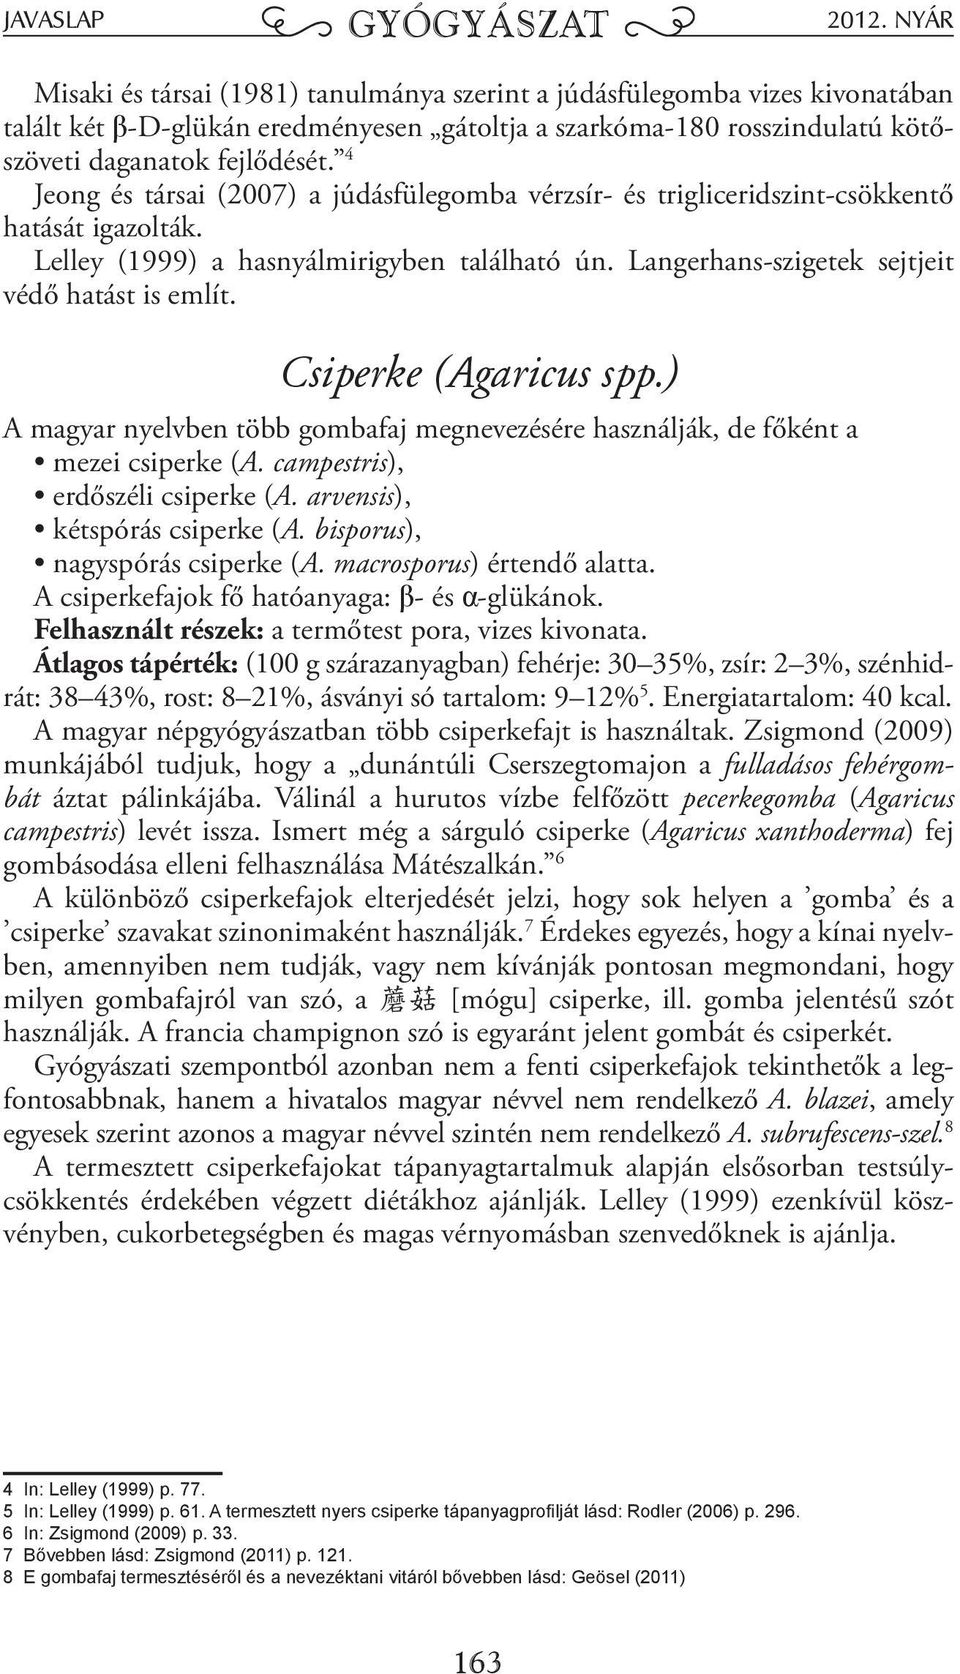 Csiperke (Agaricus spp.) A magyar nyelvben több gombafaj megnevezésére használják, de főként a mezei csiperke (A. campestris), erdőszéli csiperke (A. arvensis), kétspórás csiperke (A.